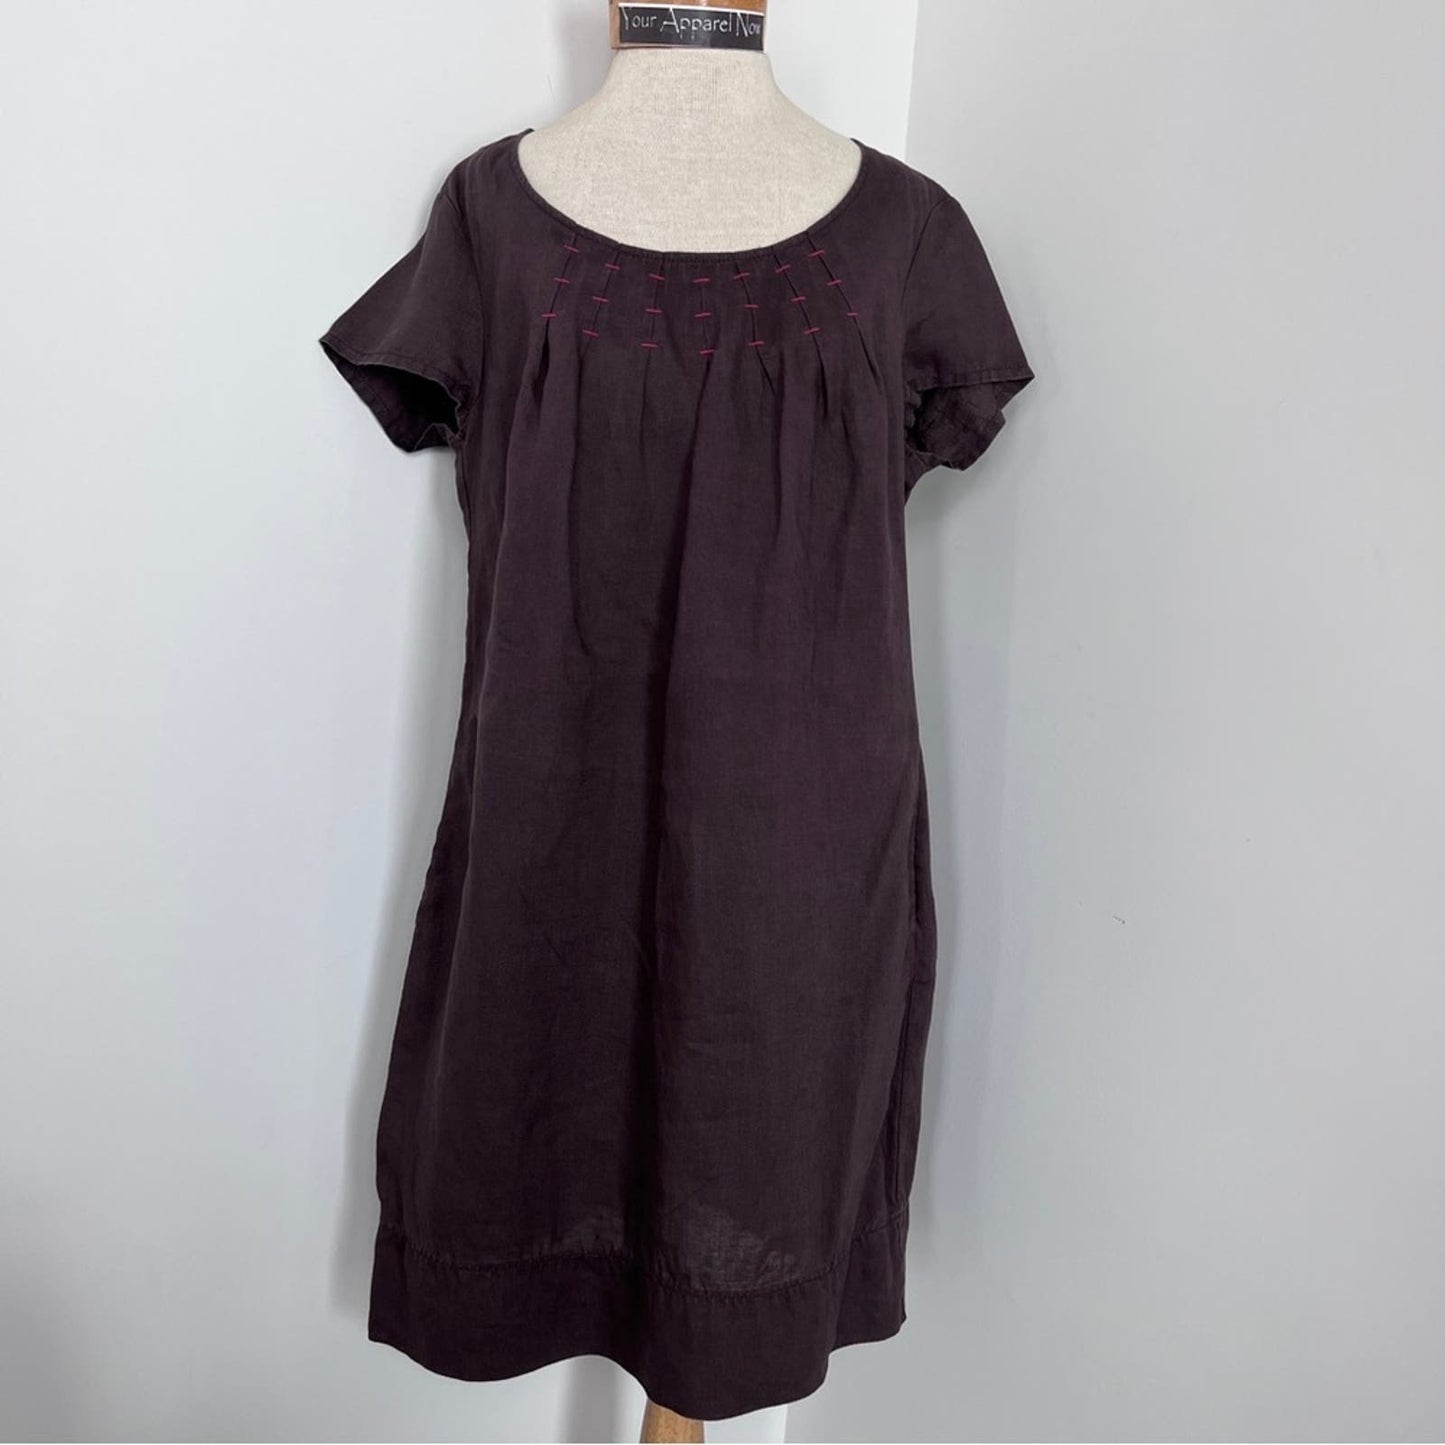 Boden Brown Short Sleeve Linen Short Shift Dress size 10R (389)